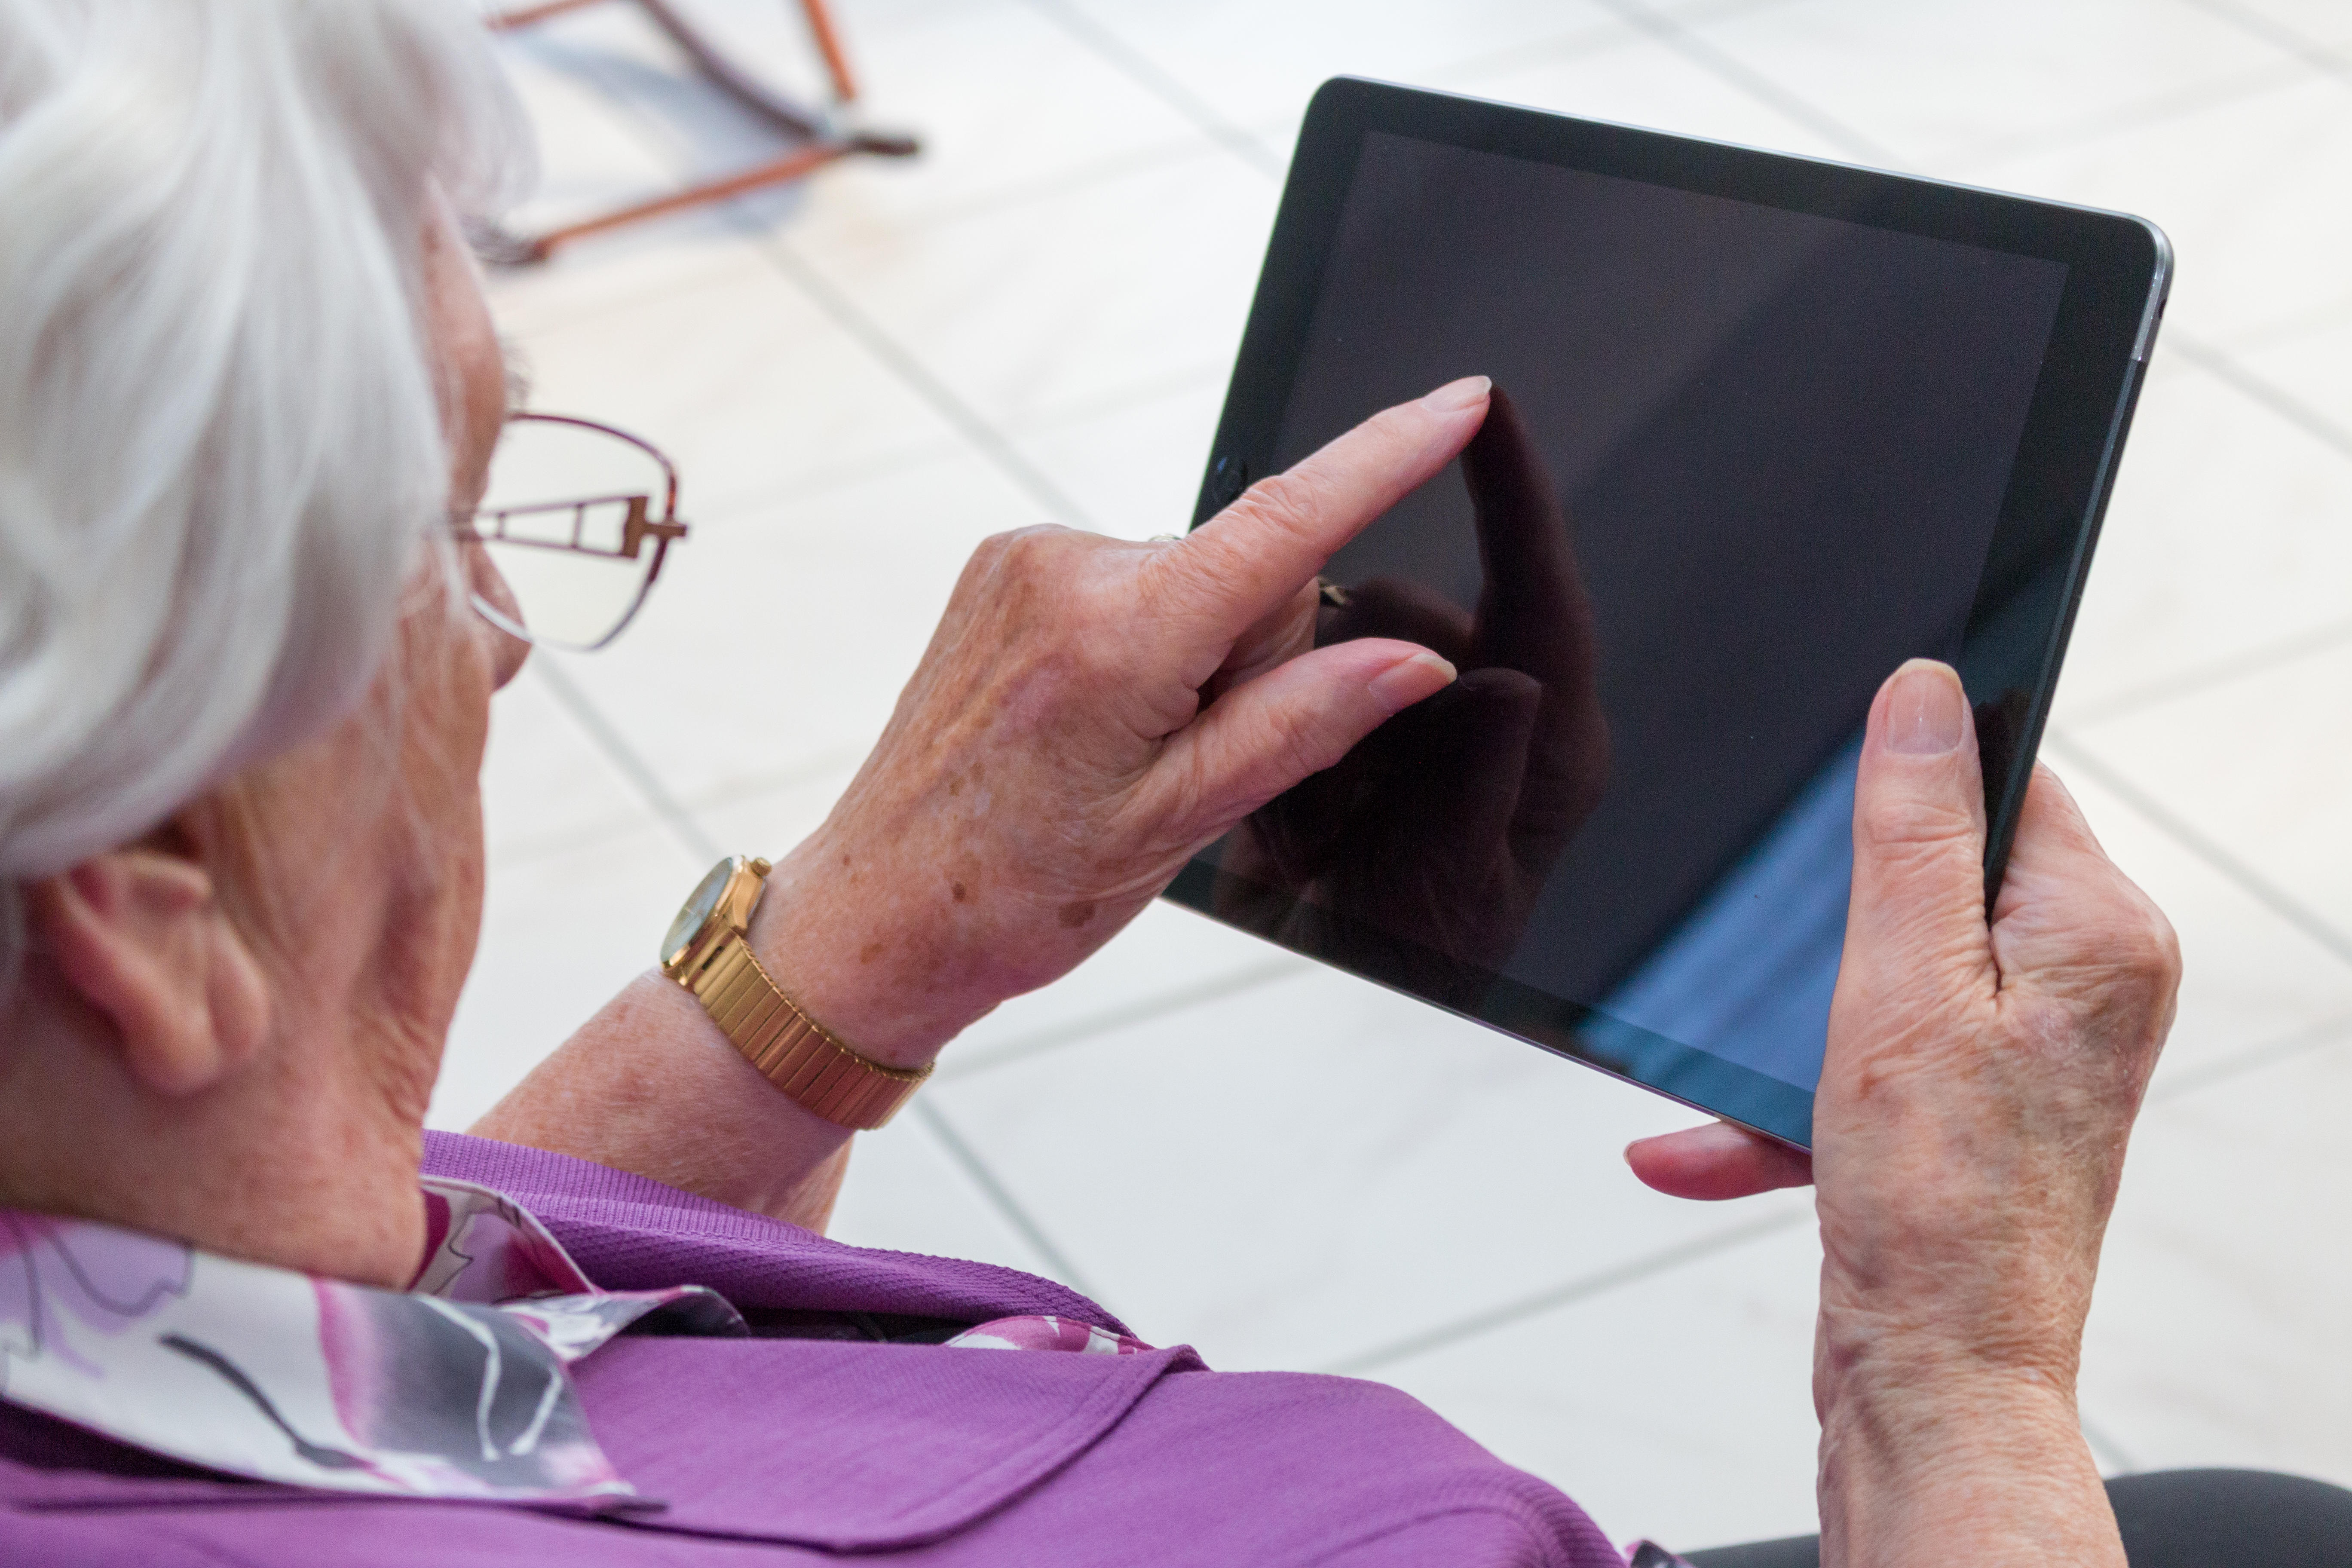 Menyw 95 oed yn eistedd yn yr ystafell fyw yn teipio ar ddyfais symudol neu iPad